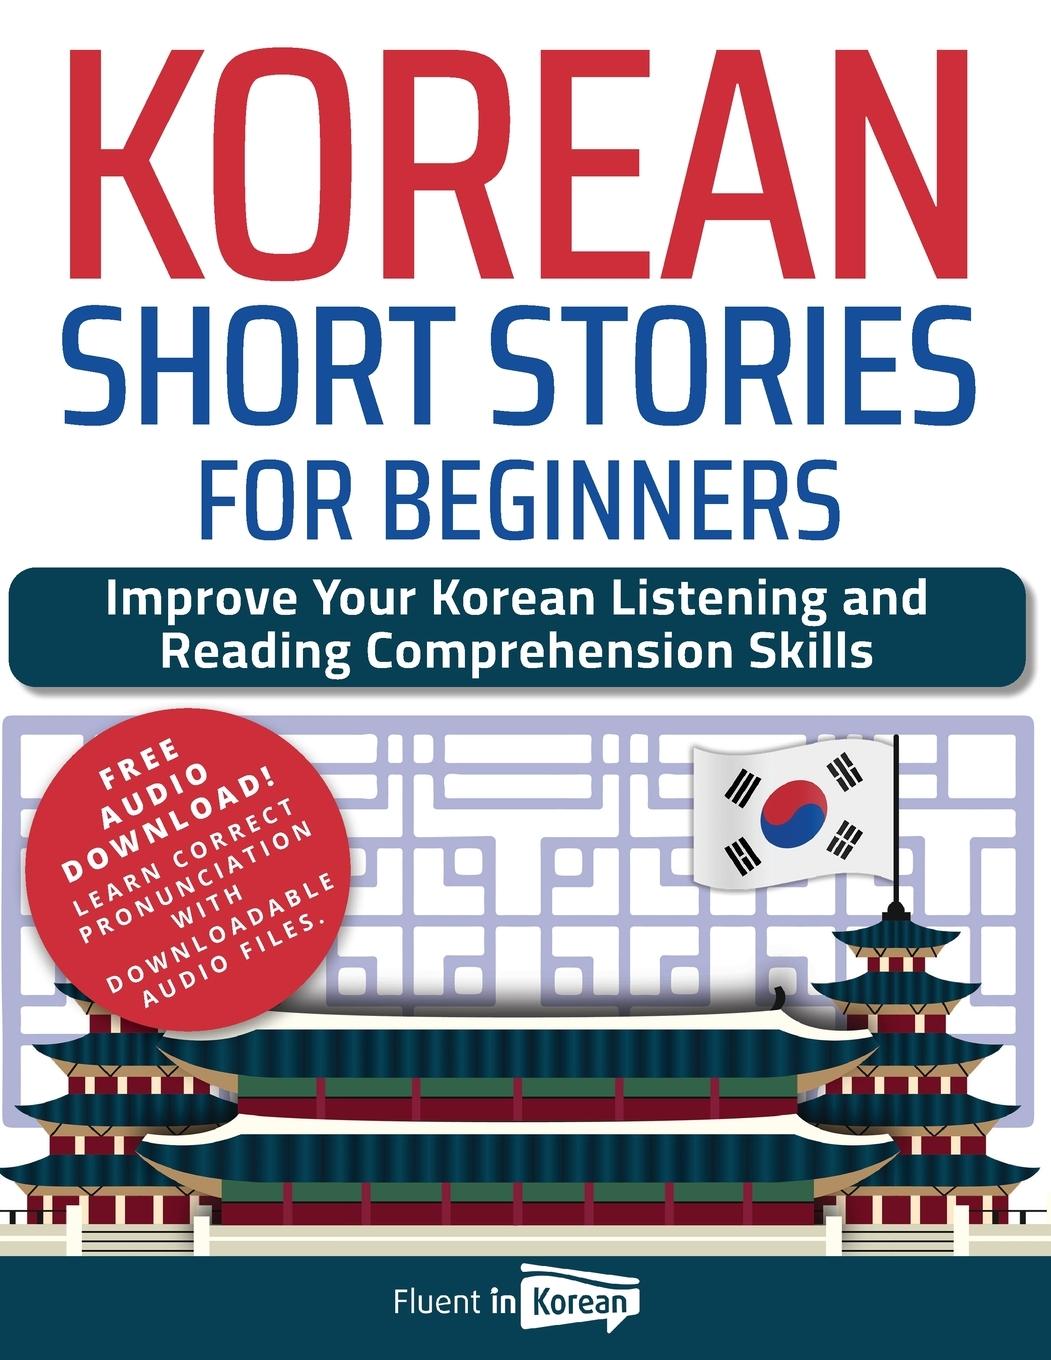 Book Korean Short Stories for Beginners 